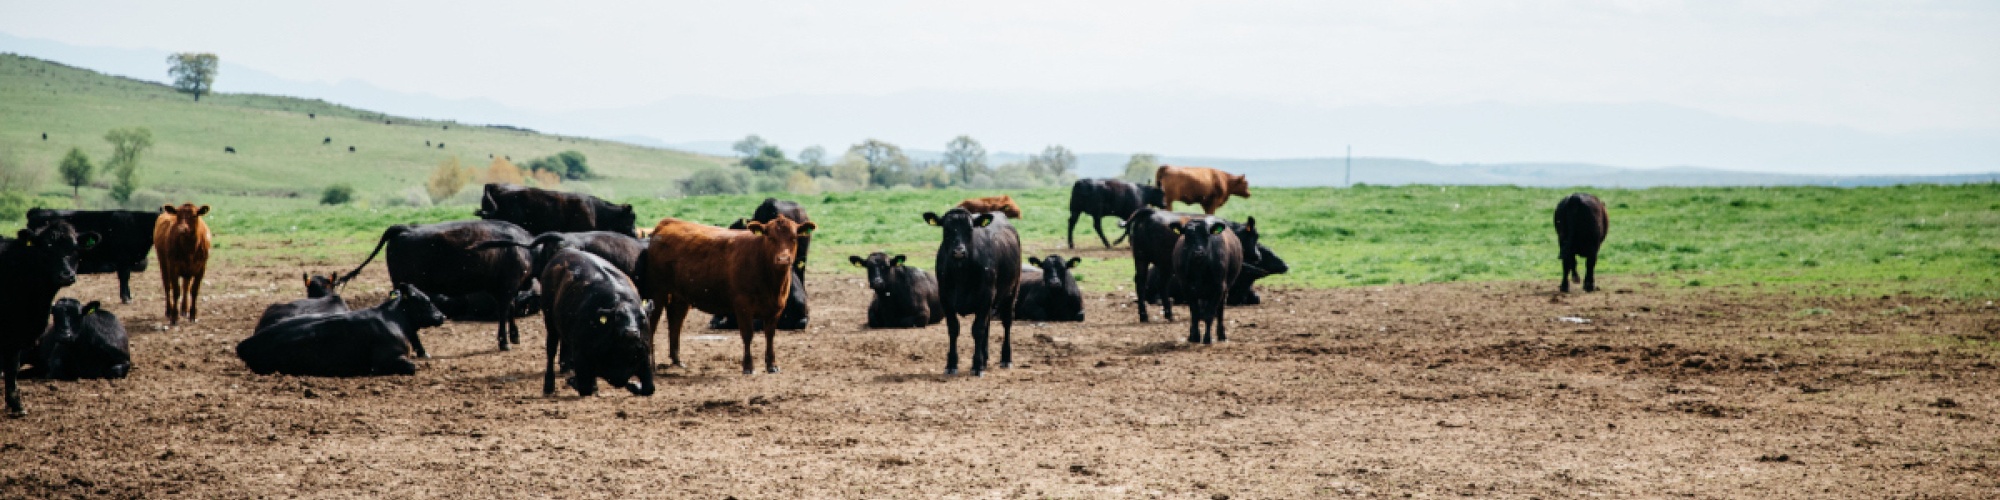 A herd of cattle stands in a muddy field in Romania.